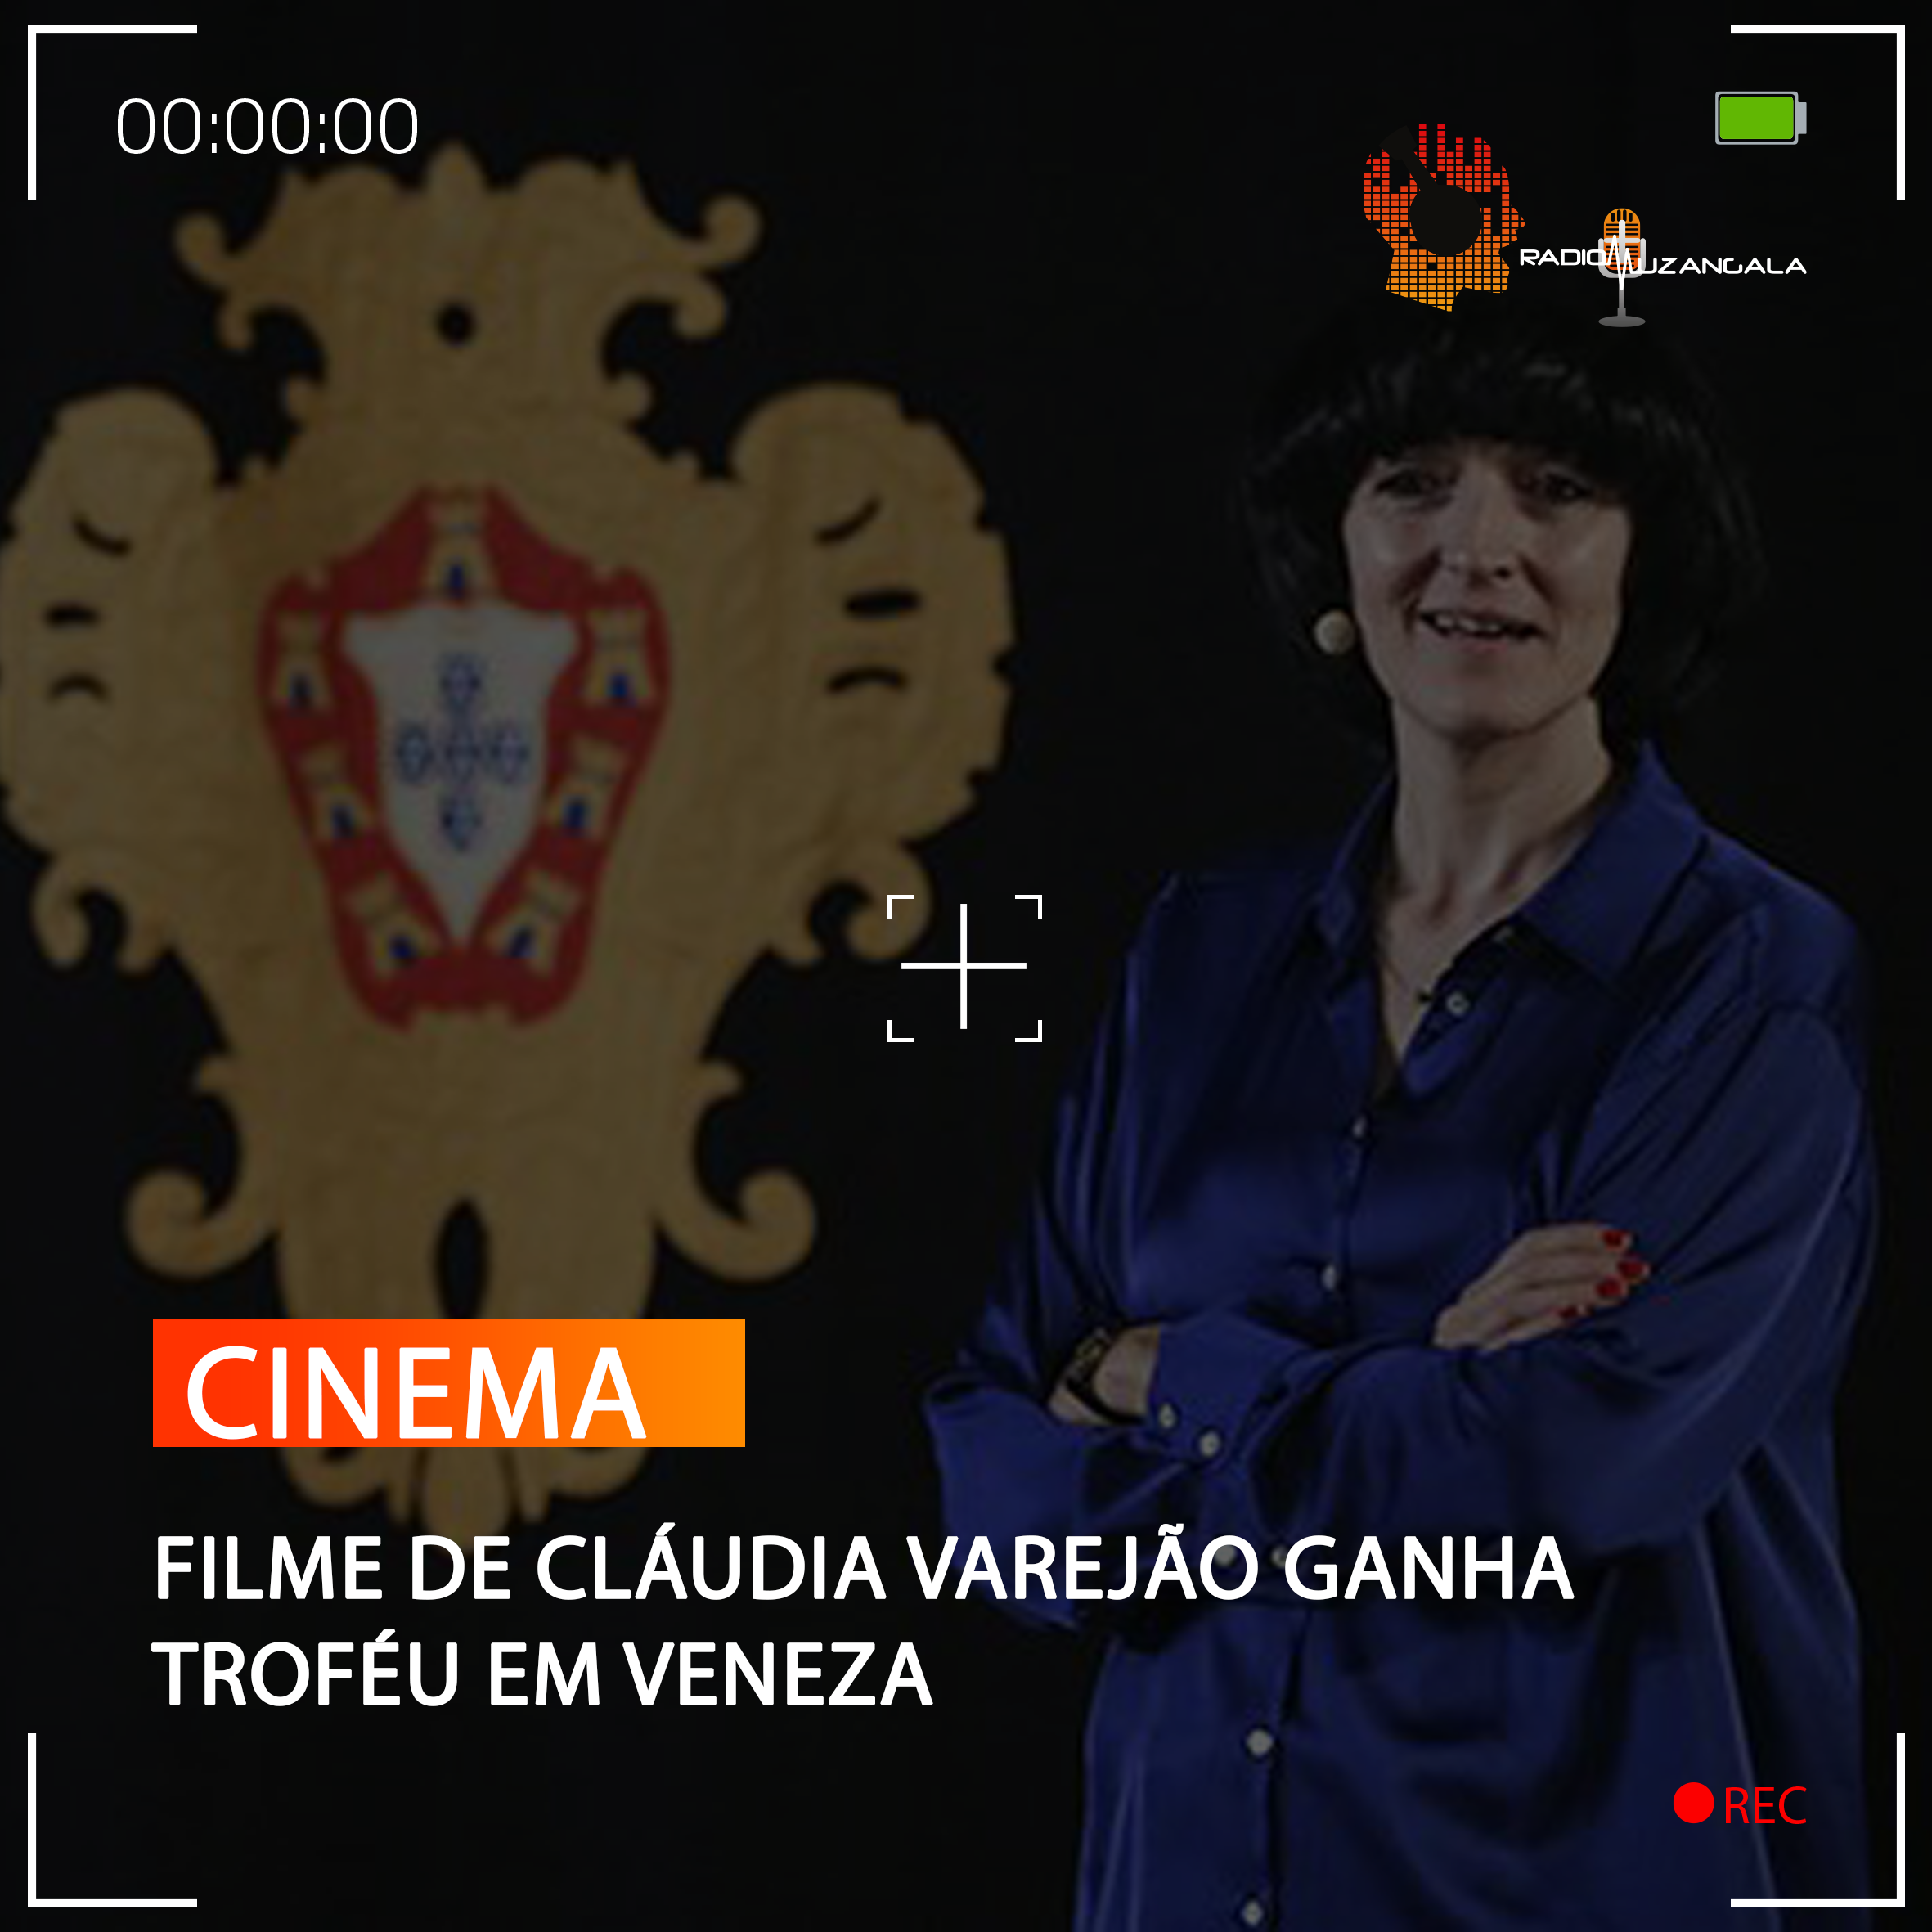  FILME DE CLÁUDIA VAREJÃO GANHA TROFÉU EM VENEZA